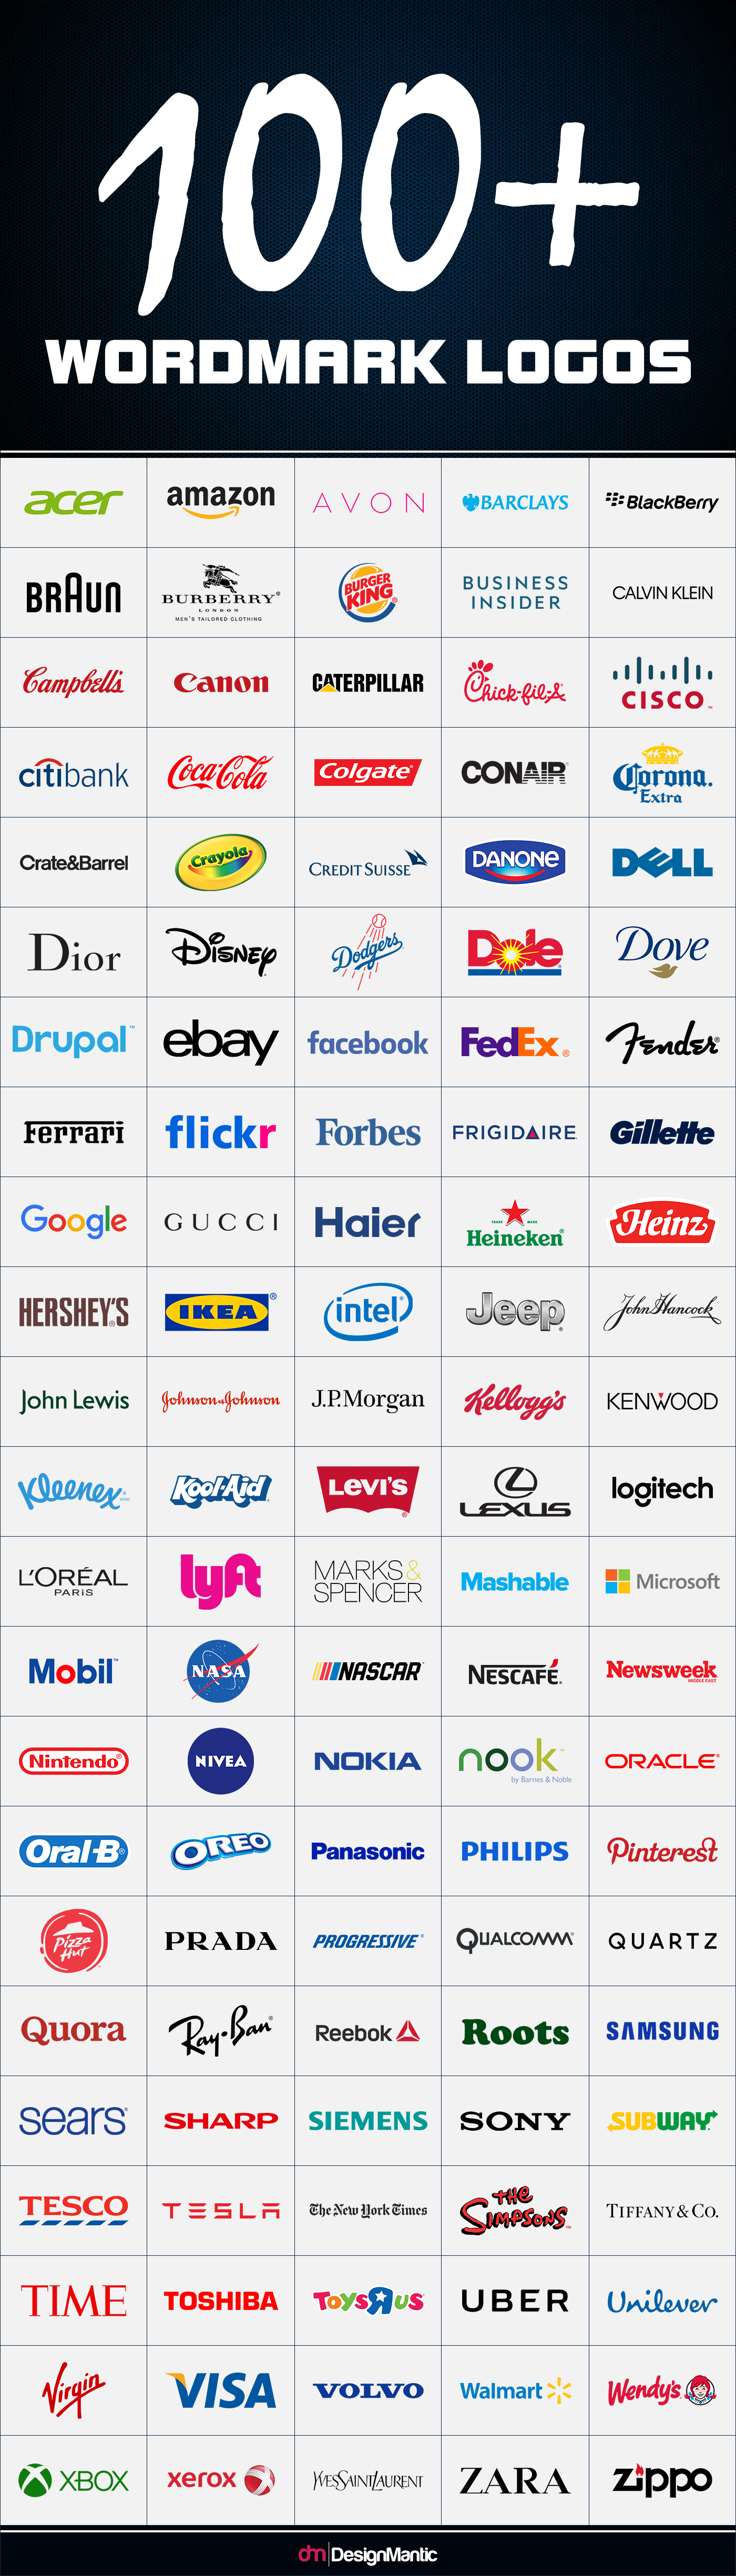 The Evolution of Top 10 Wordmark Logos!